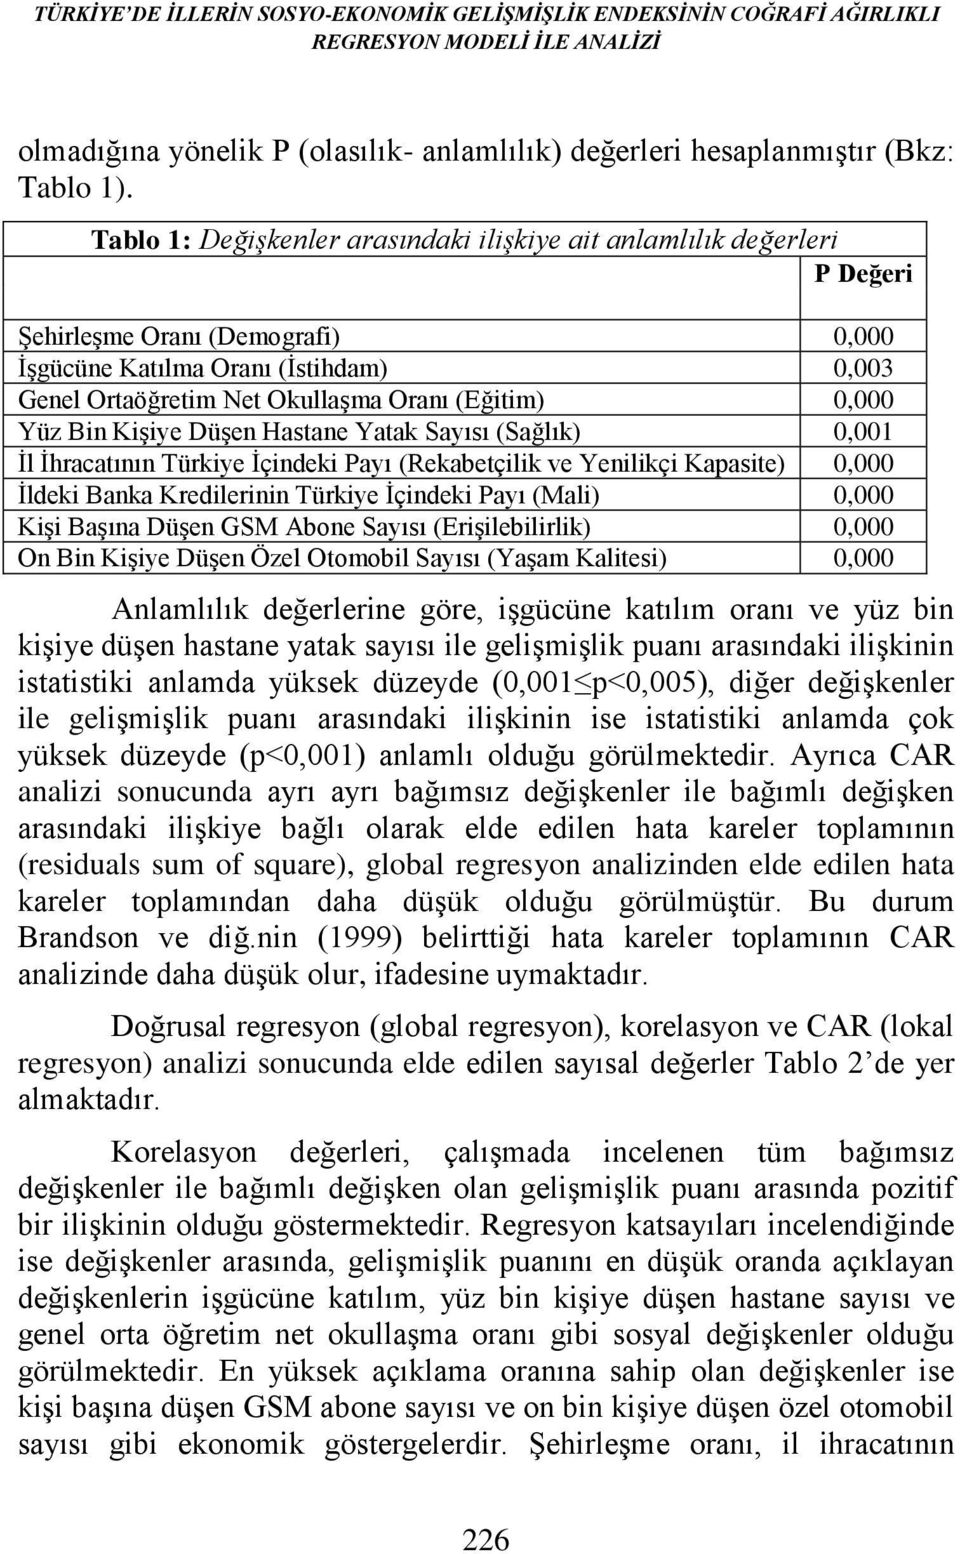 0,000 Yüz Bin Kişiye Düşen Hastane Yatak Sayısı (Sağlık) 0,001 İl İhracatının Türkiye İçindeki Payı (Rekabetçilik ve Yenilikçi Kapasite) 0,000 İldeki Banka Kredilerinin Türkiye İçindeki Payı (Mali)